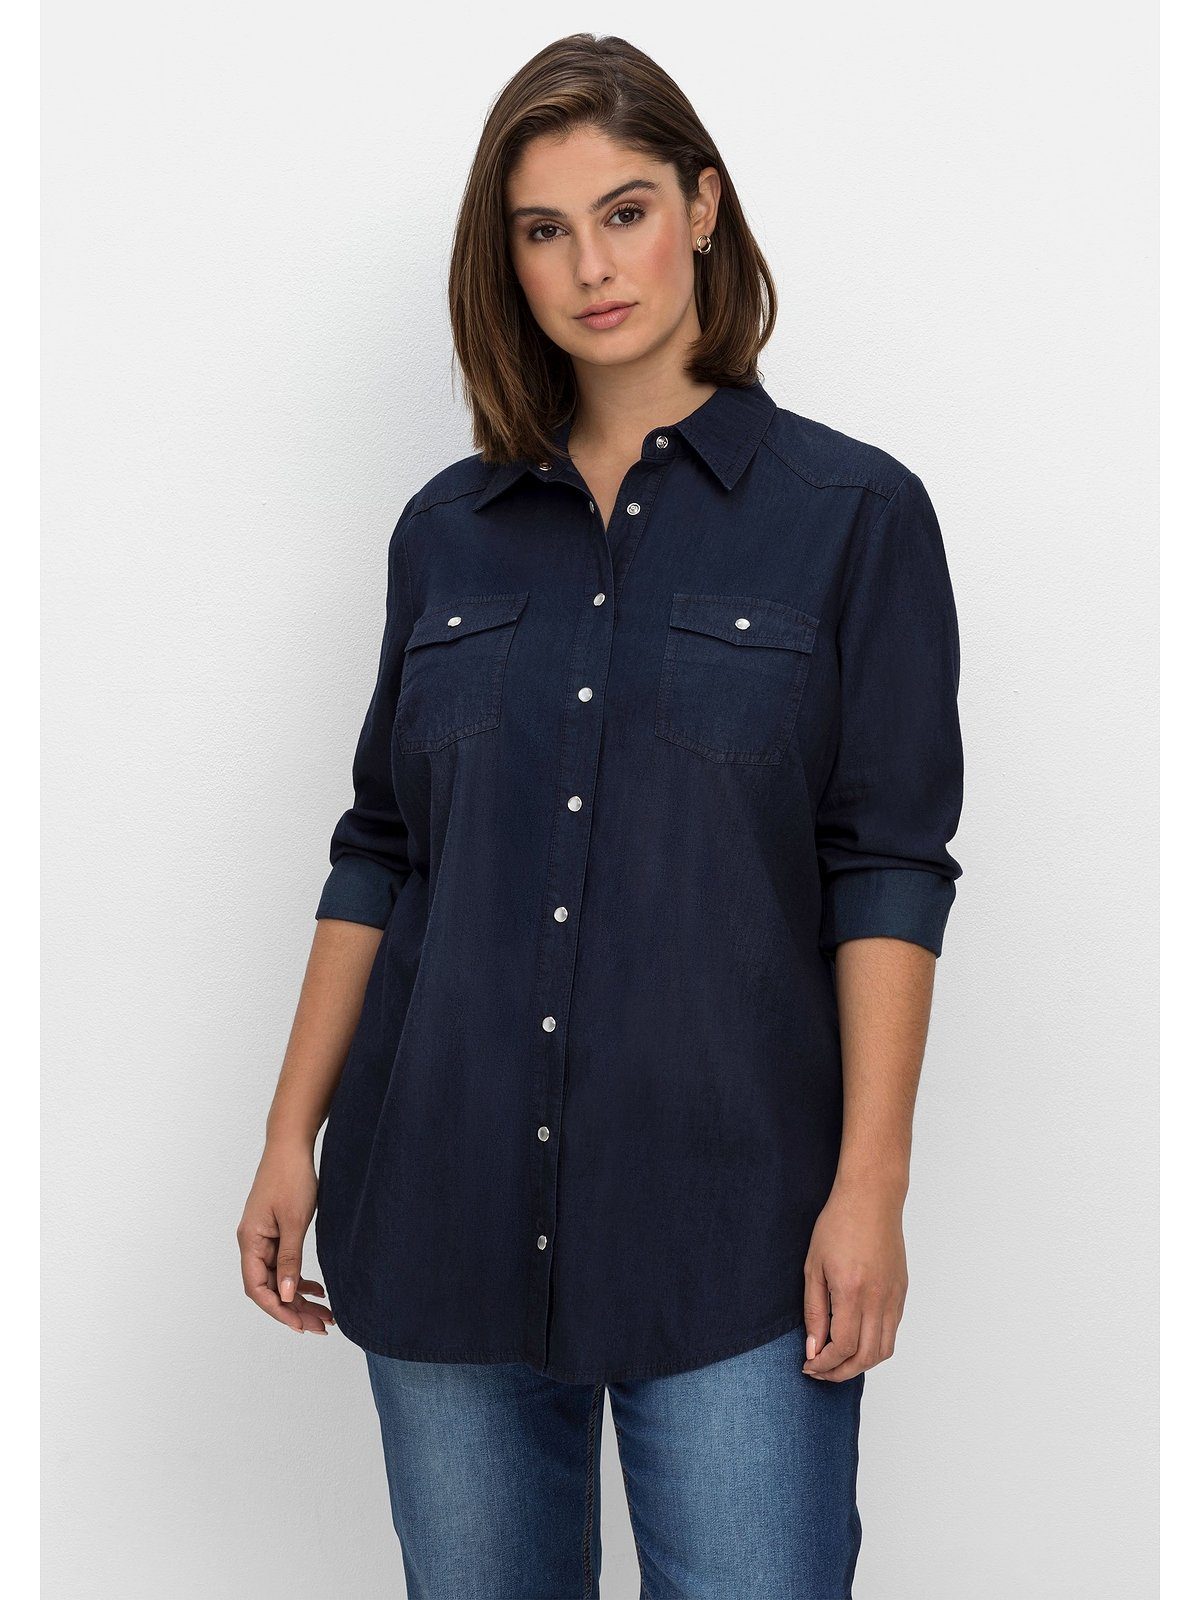 [Kostenloser Versand nur für begrenzte Zeit] blue Jeansbluse und Brusttaschen mit Denim dark Größen Große Knopfleiste Sheego